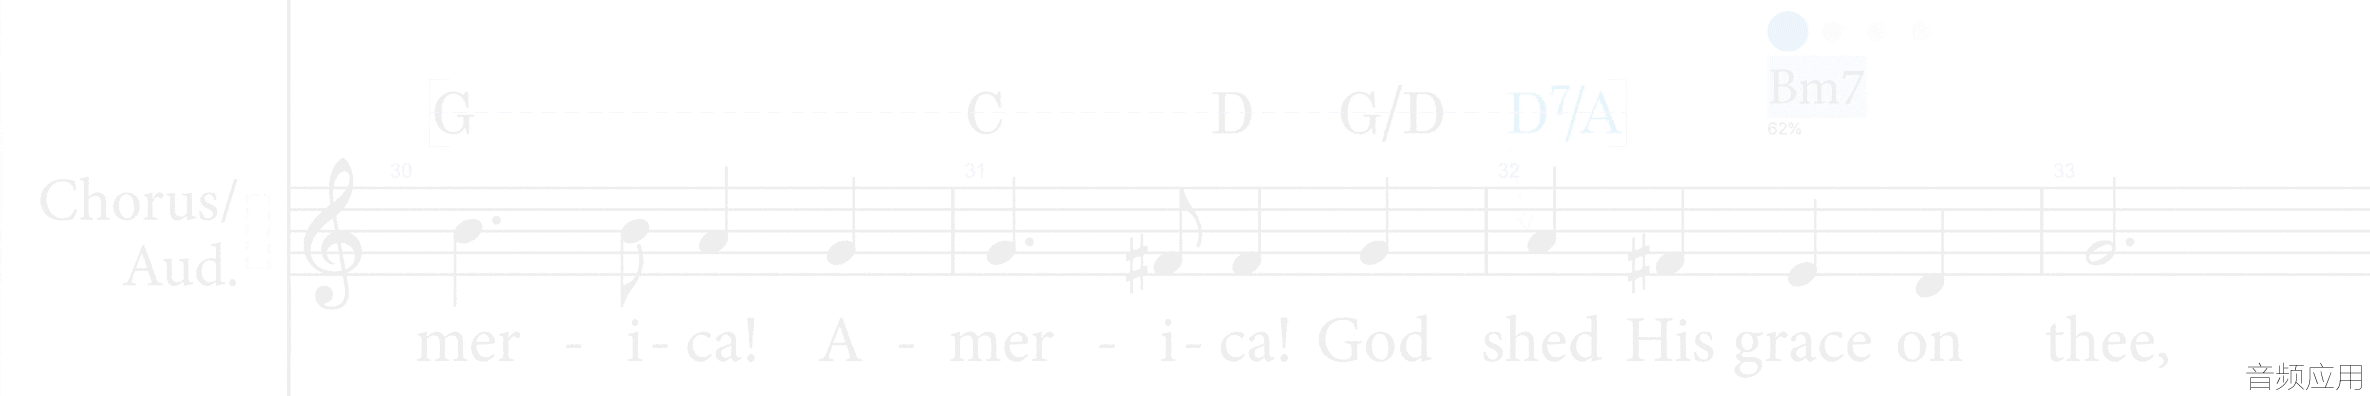 chord-symbols-2.gif